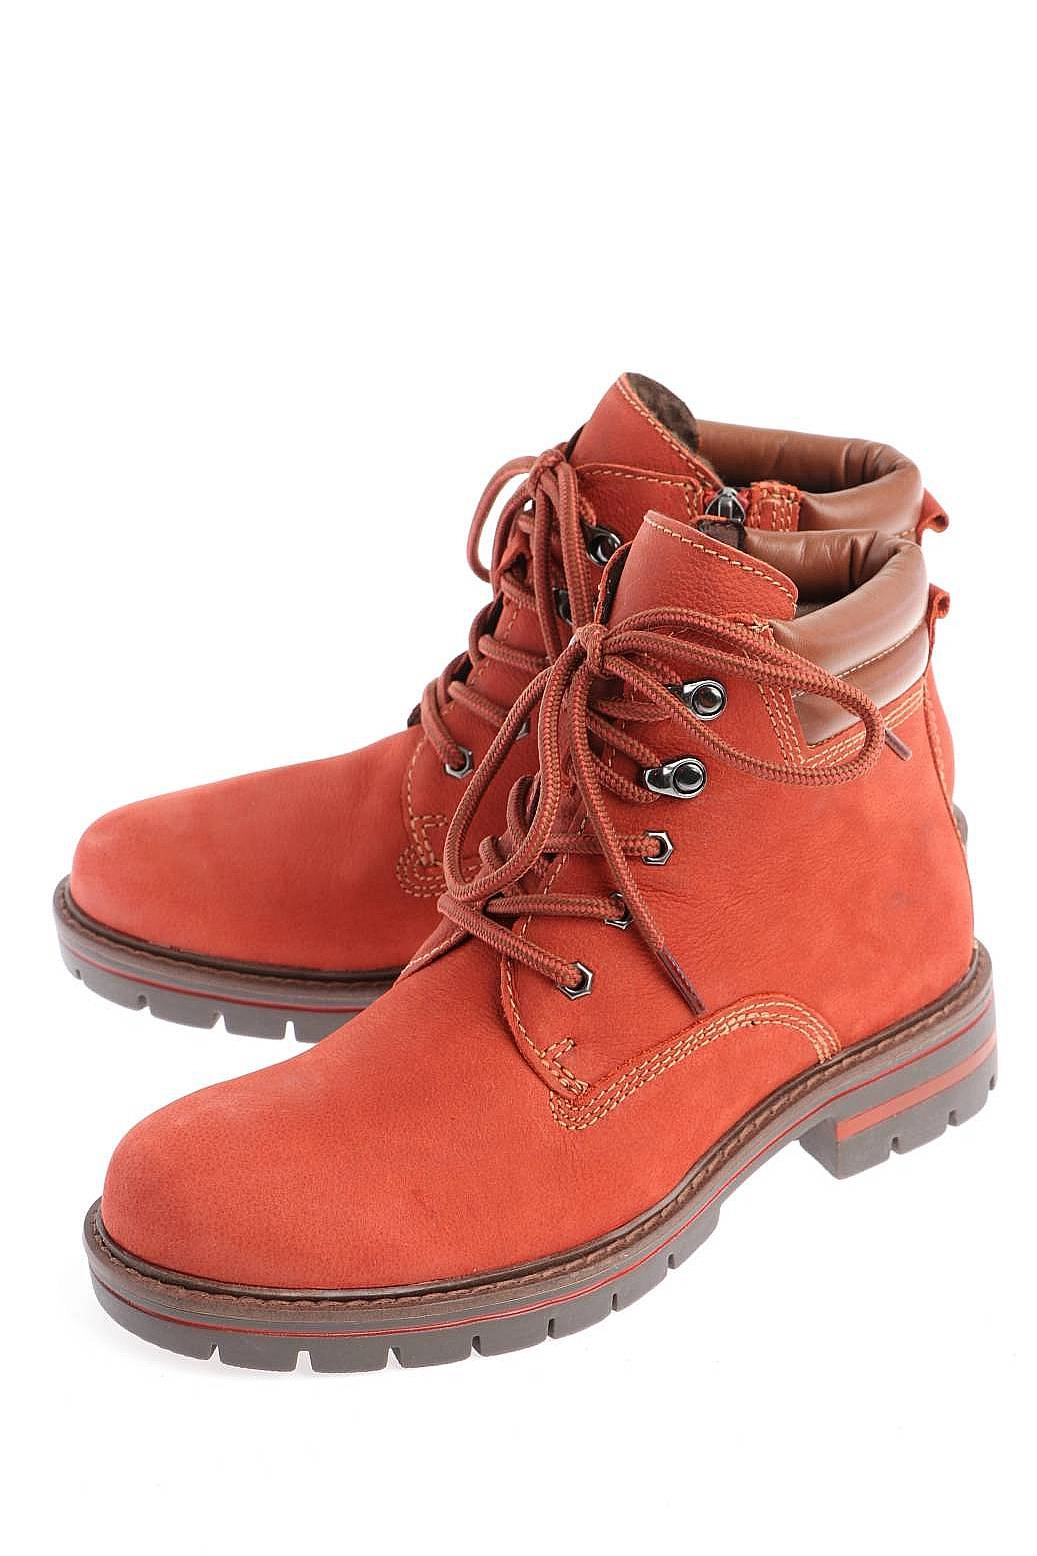 Ботинки Marco Tozzi оранжевые 2-2-26268-25-582 купить в Екатеринбурге за4190 руб